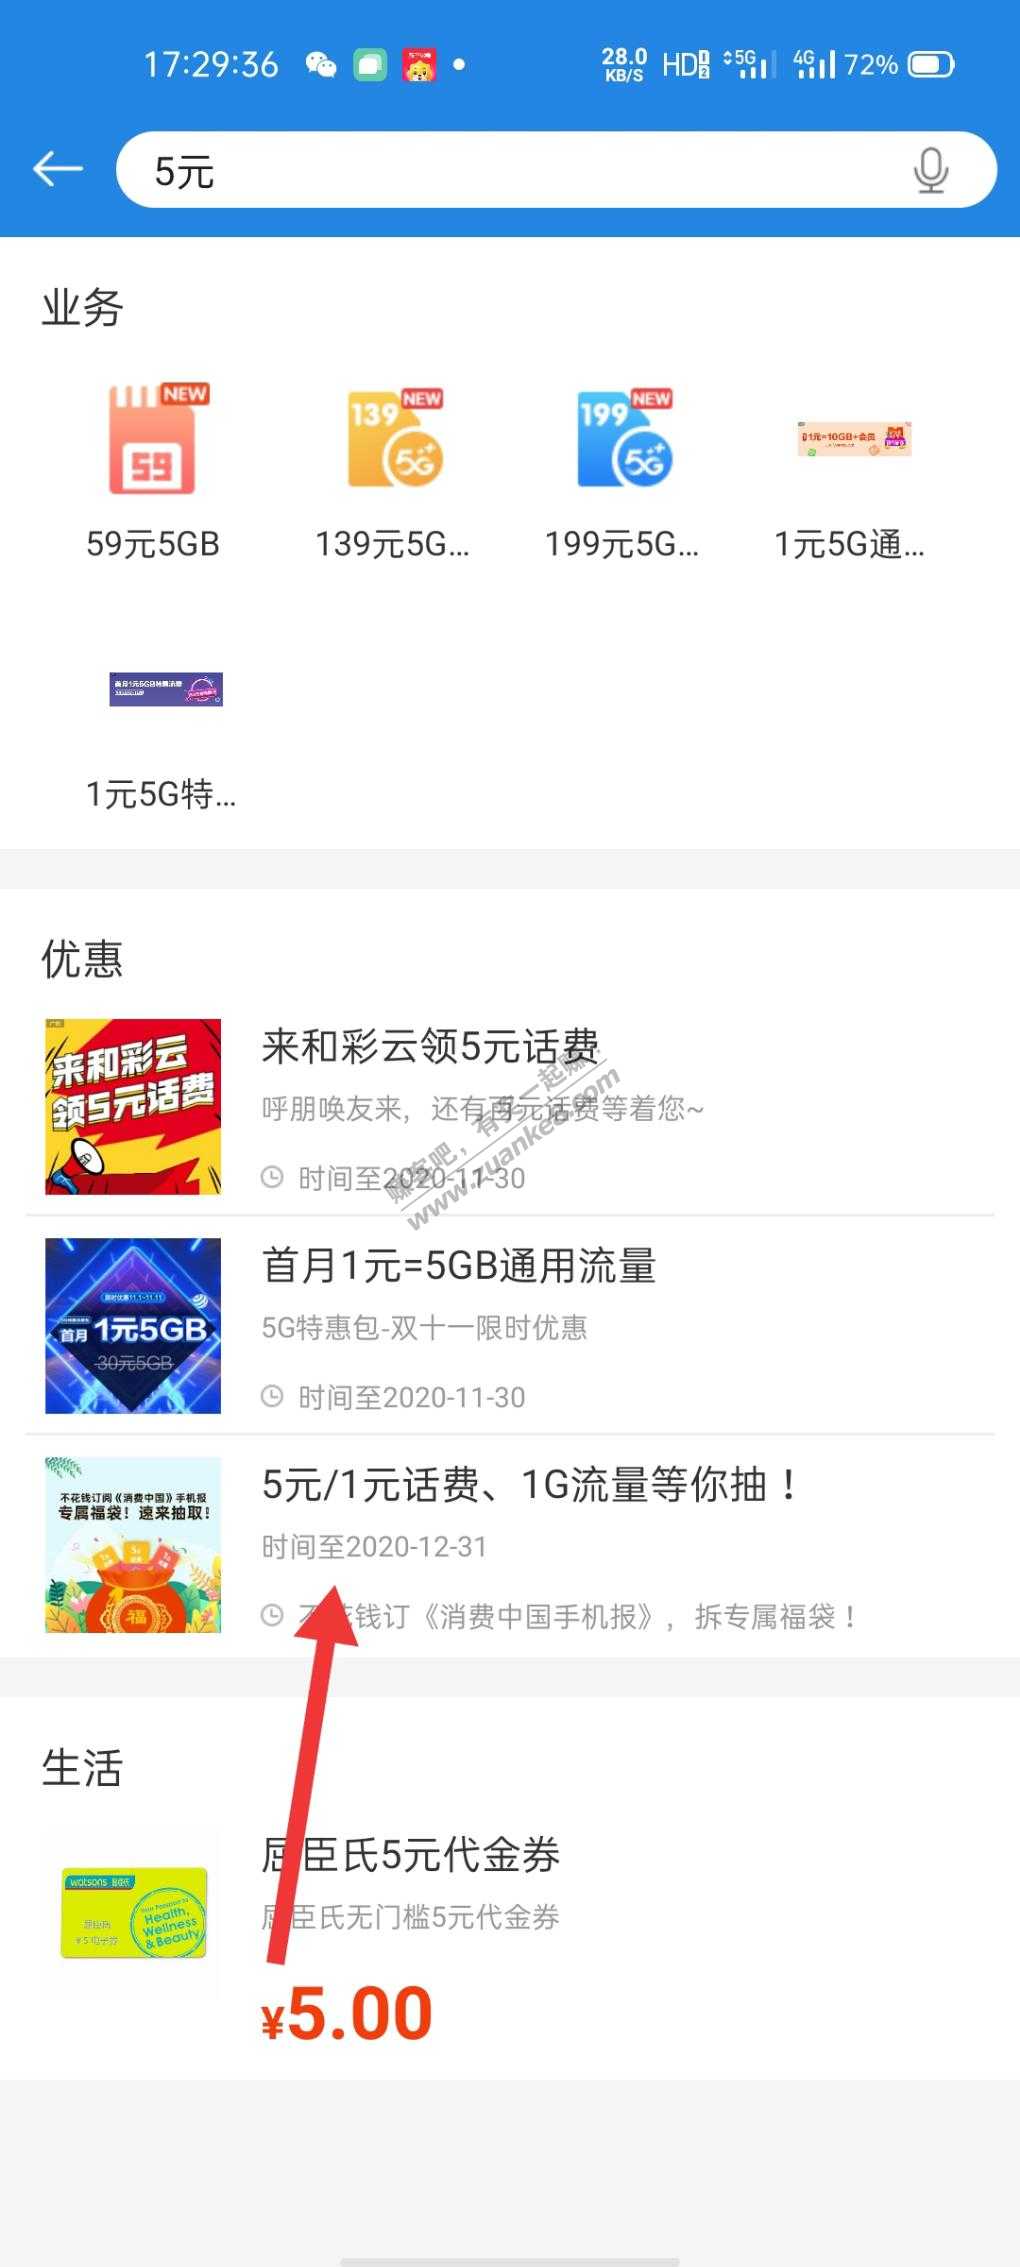 广东移动app-5话费/1话费/1流量-惠小助(52huixz.com)